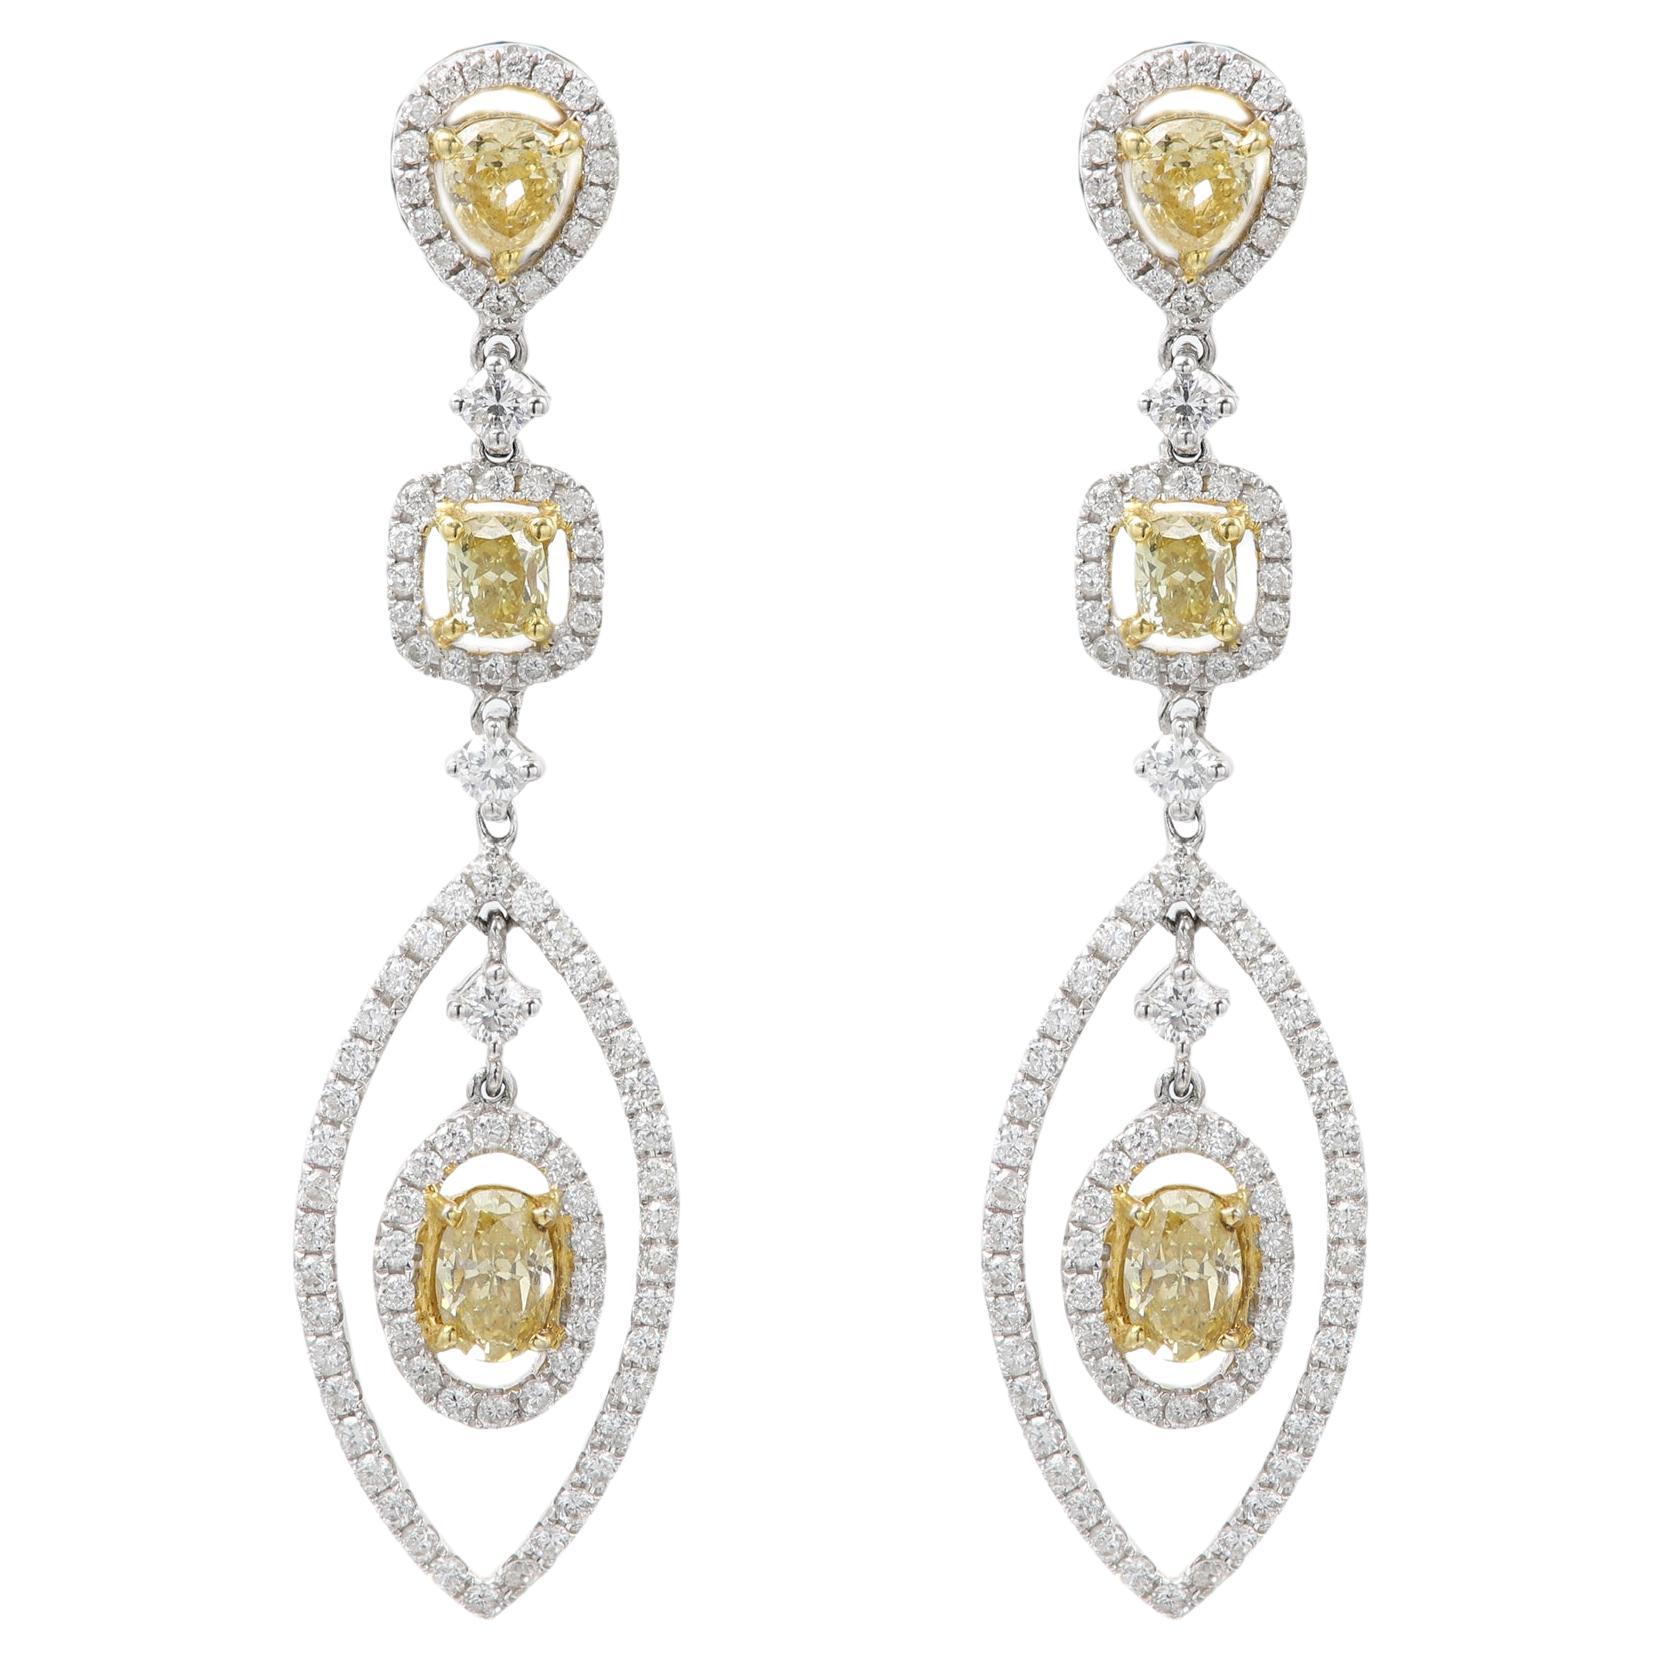 Pendants d'oreilles chandelier en or blanc 18 carats et diamants jaunes